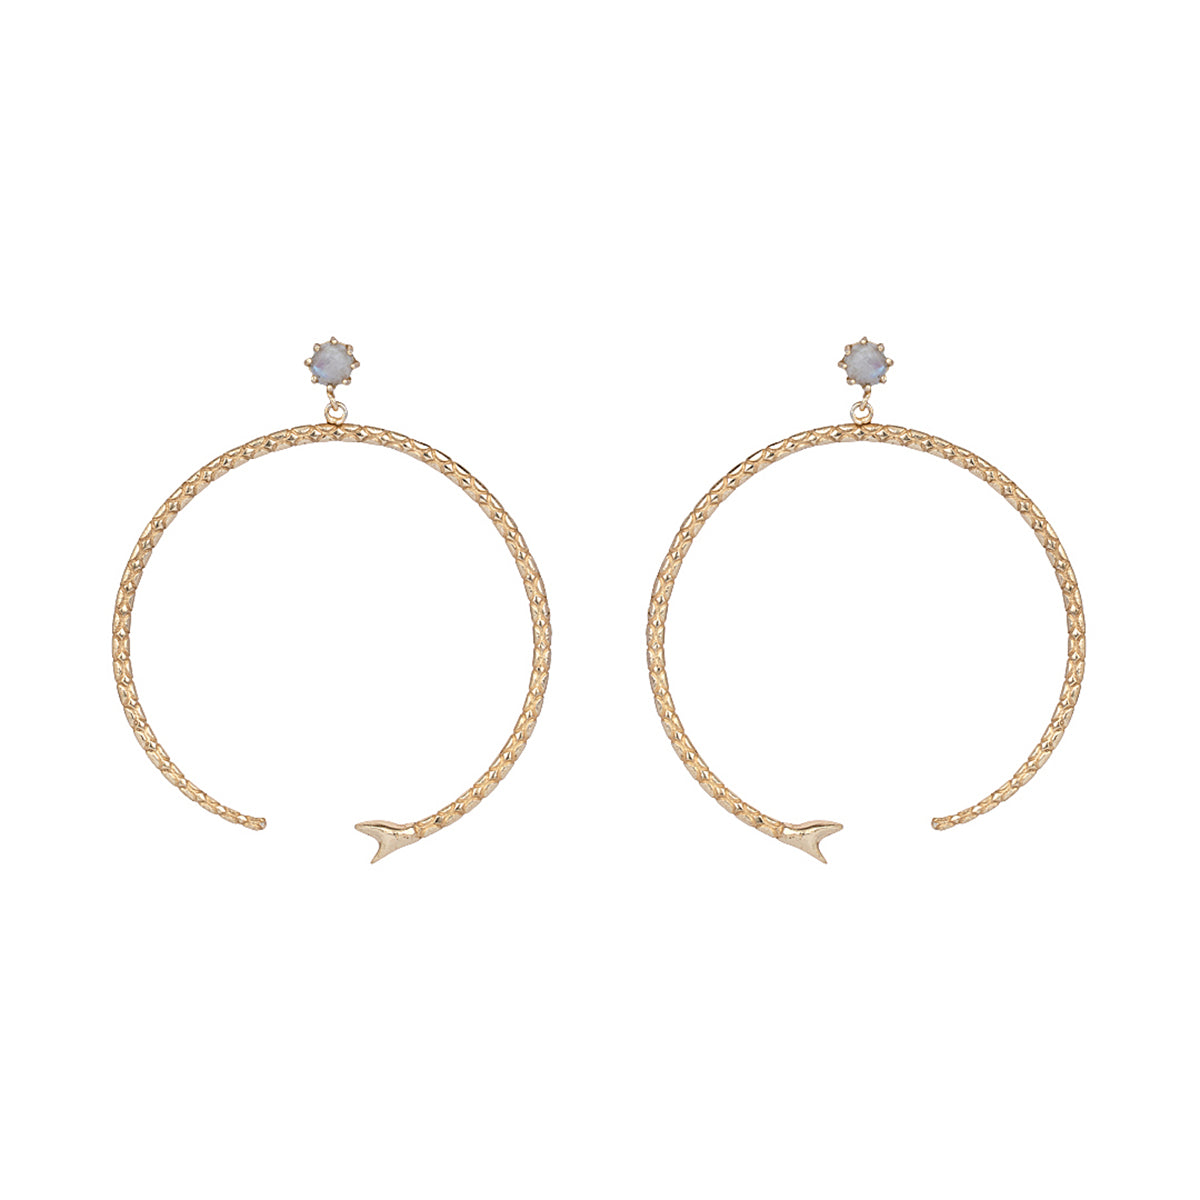 Darva Earrings Classic Hoops - ZEWAR Jewelry